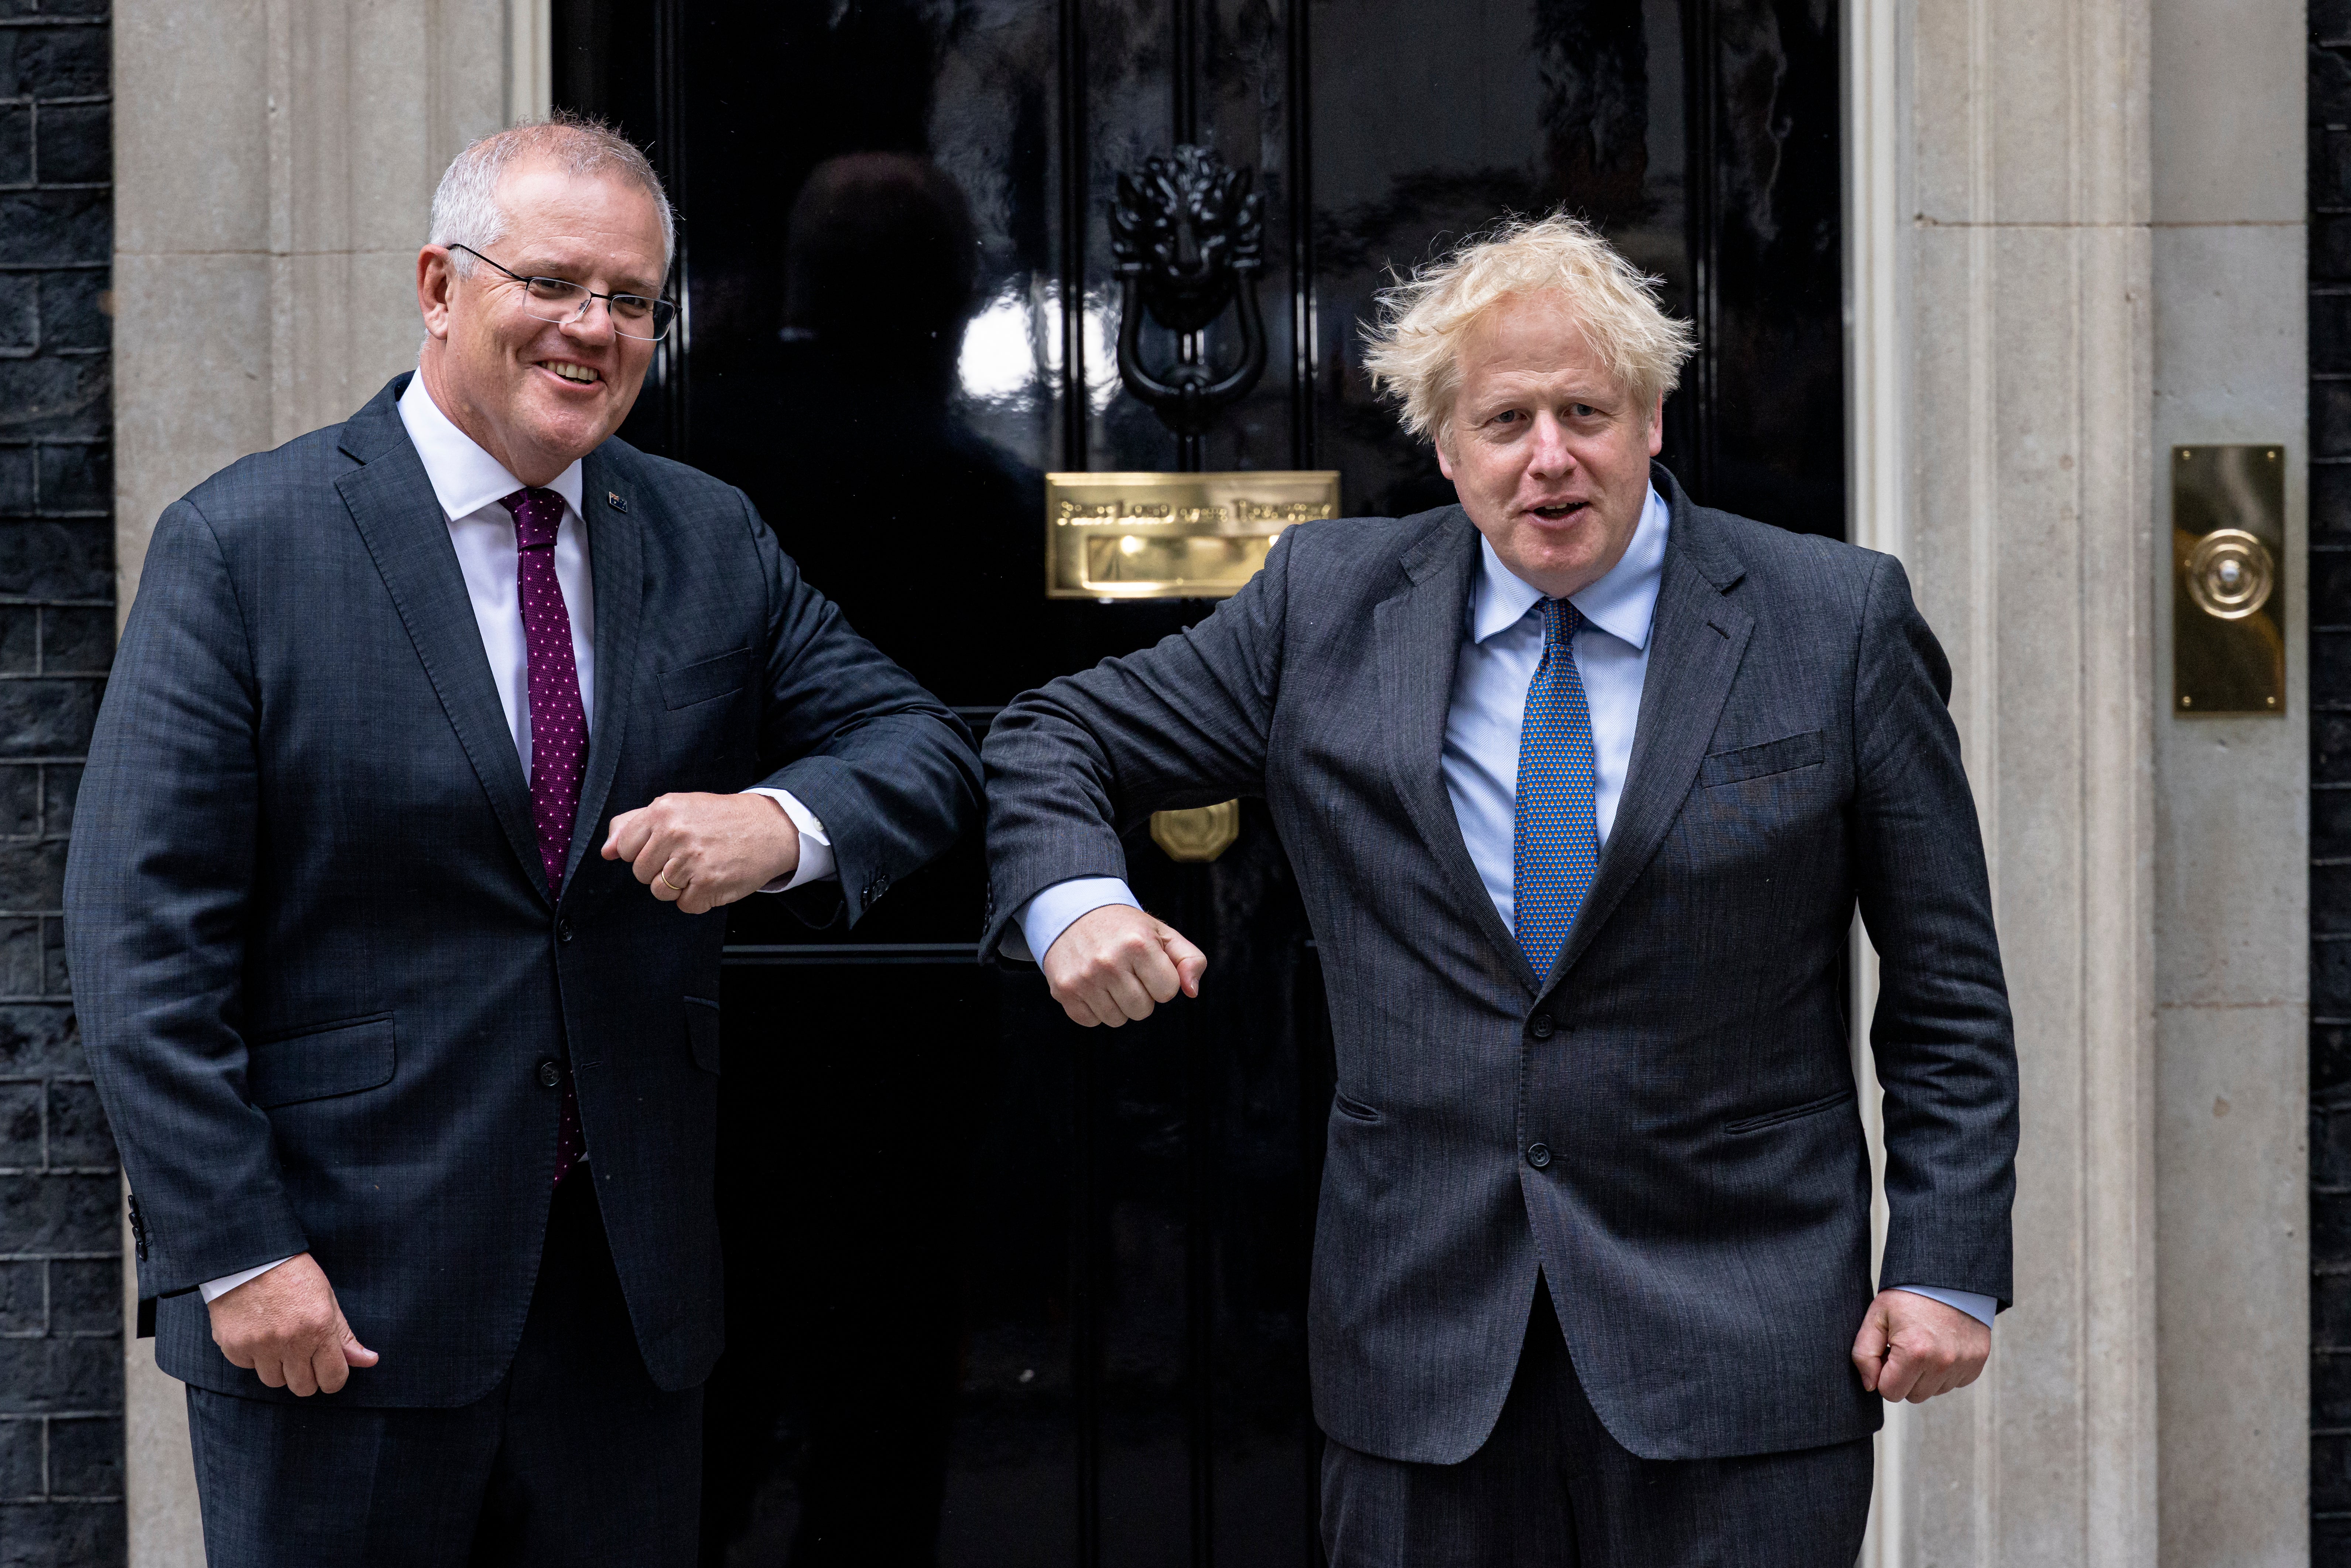 Boris Johnson welcomes Australian prime minister Scott Morrison to 10 Downing Street for talks on Monday